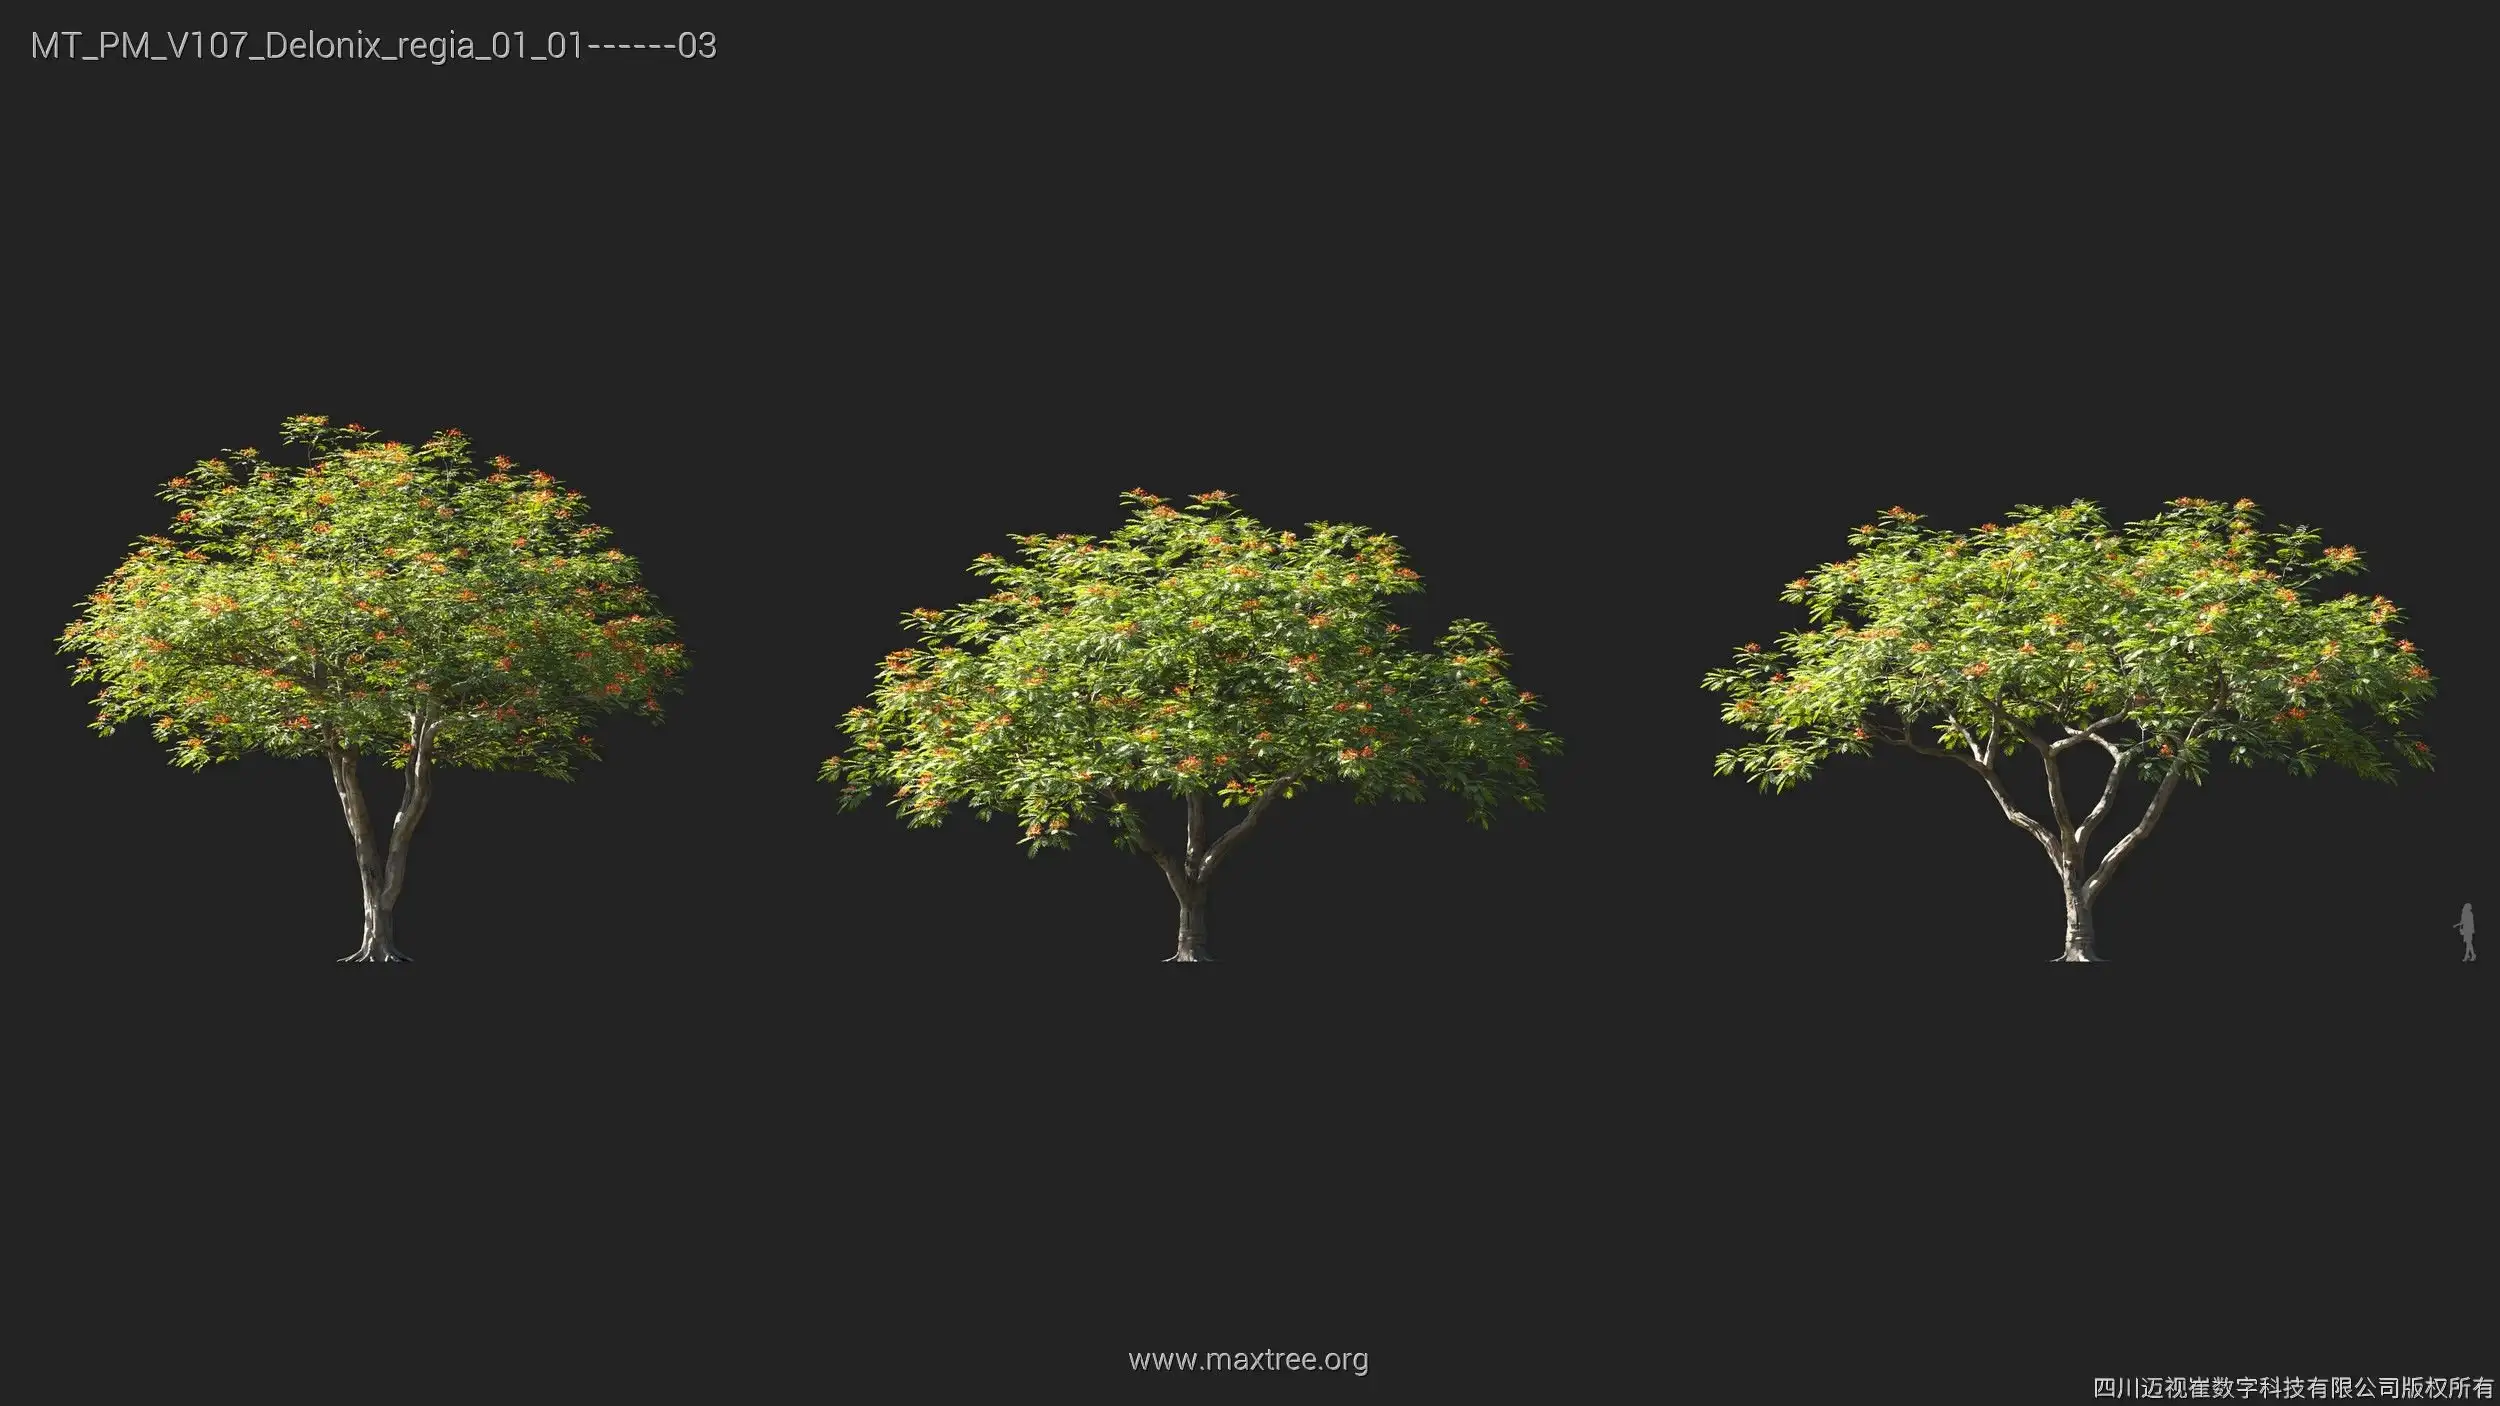 دانلود 72 مدل سه بعدی درخت - 10